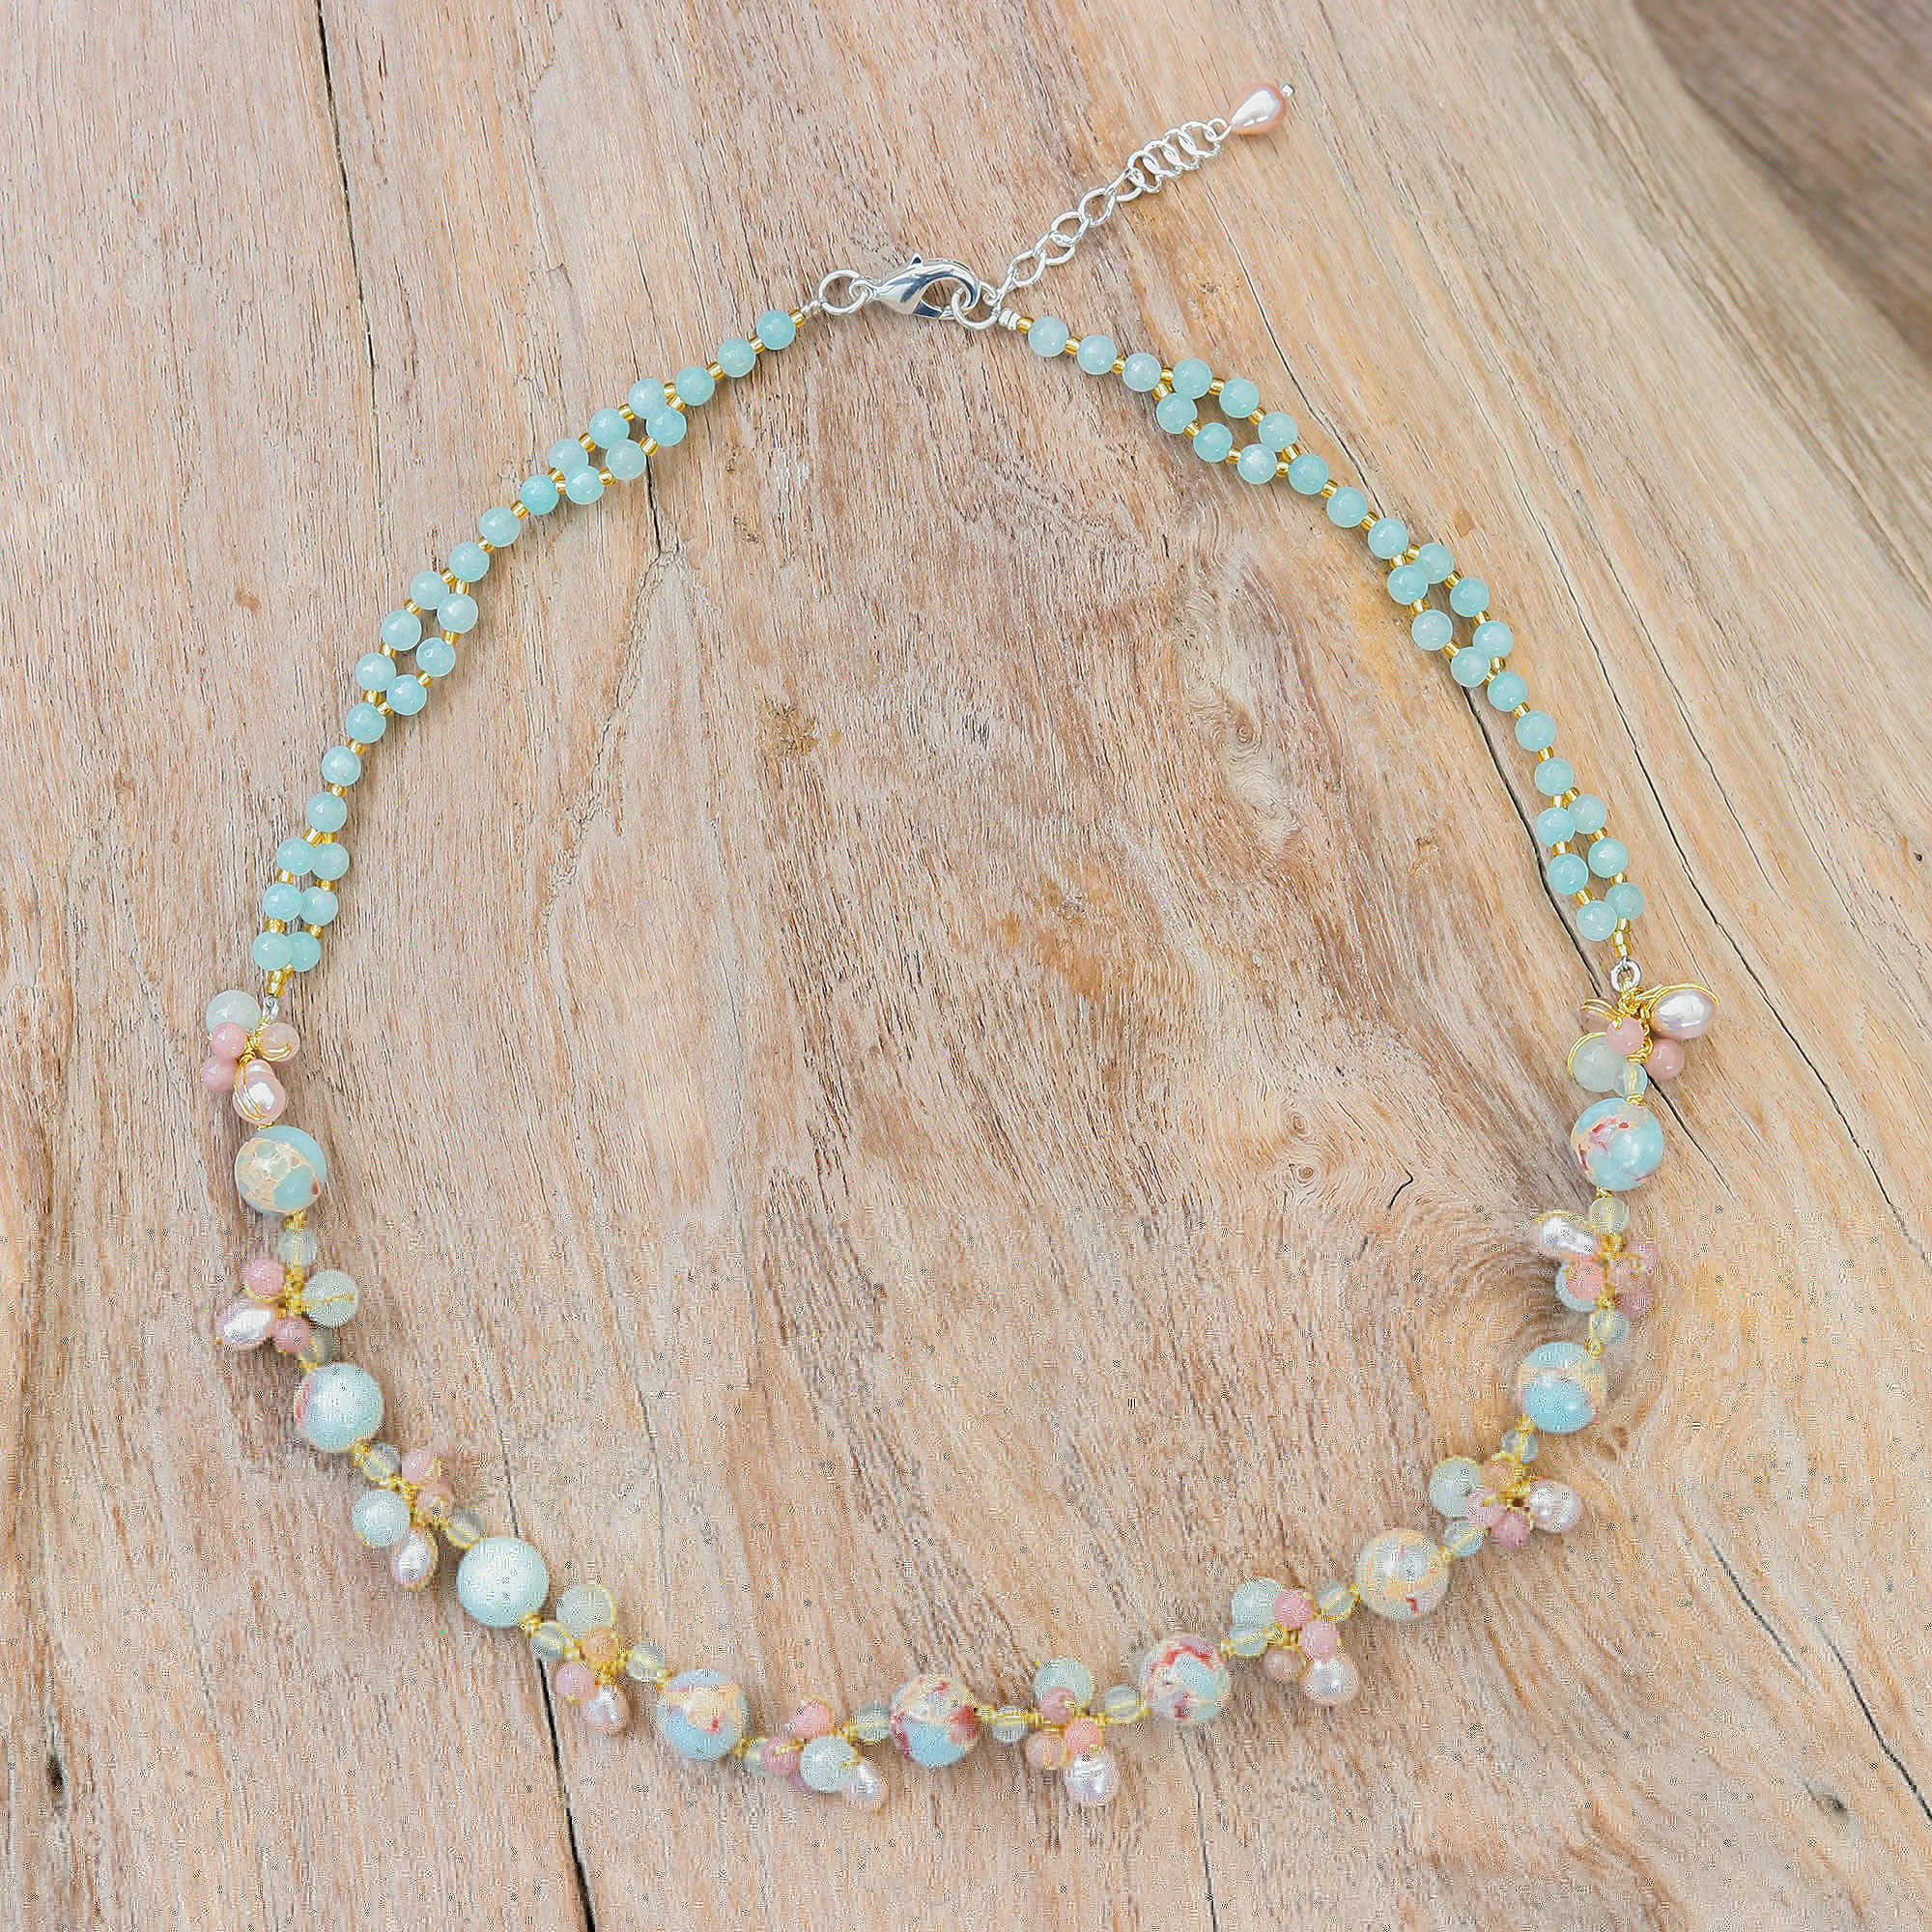 Collar con colgante de múltiples piedras preciosas - Collar hecho a mano con colgante de cuarzo rosa y perlas cultivadas